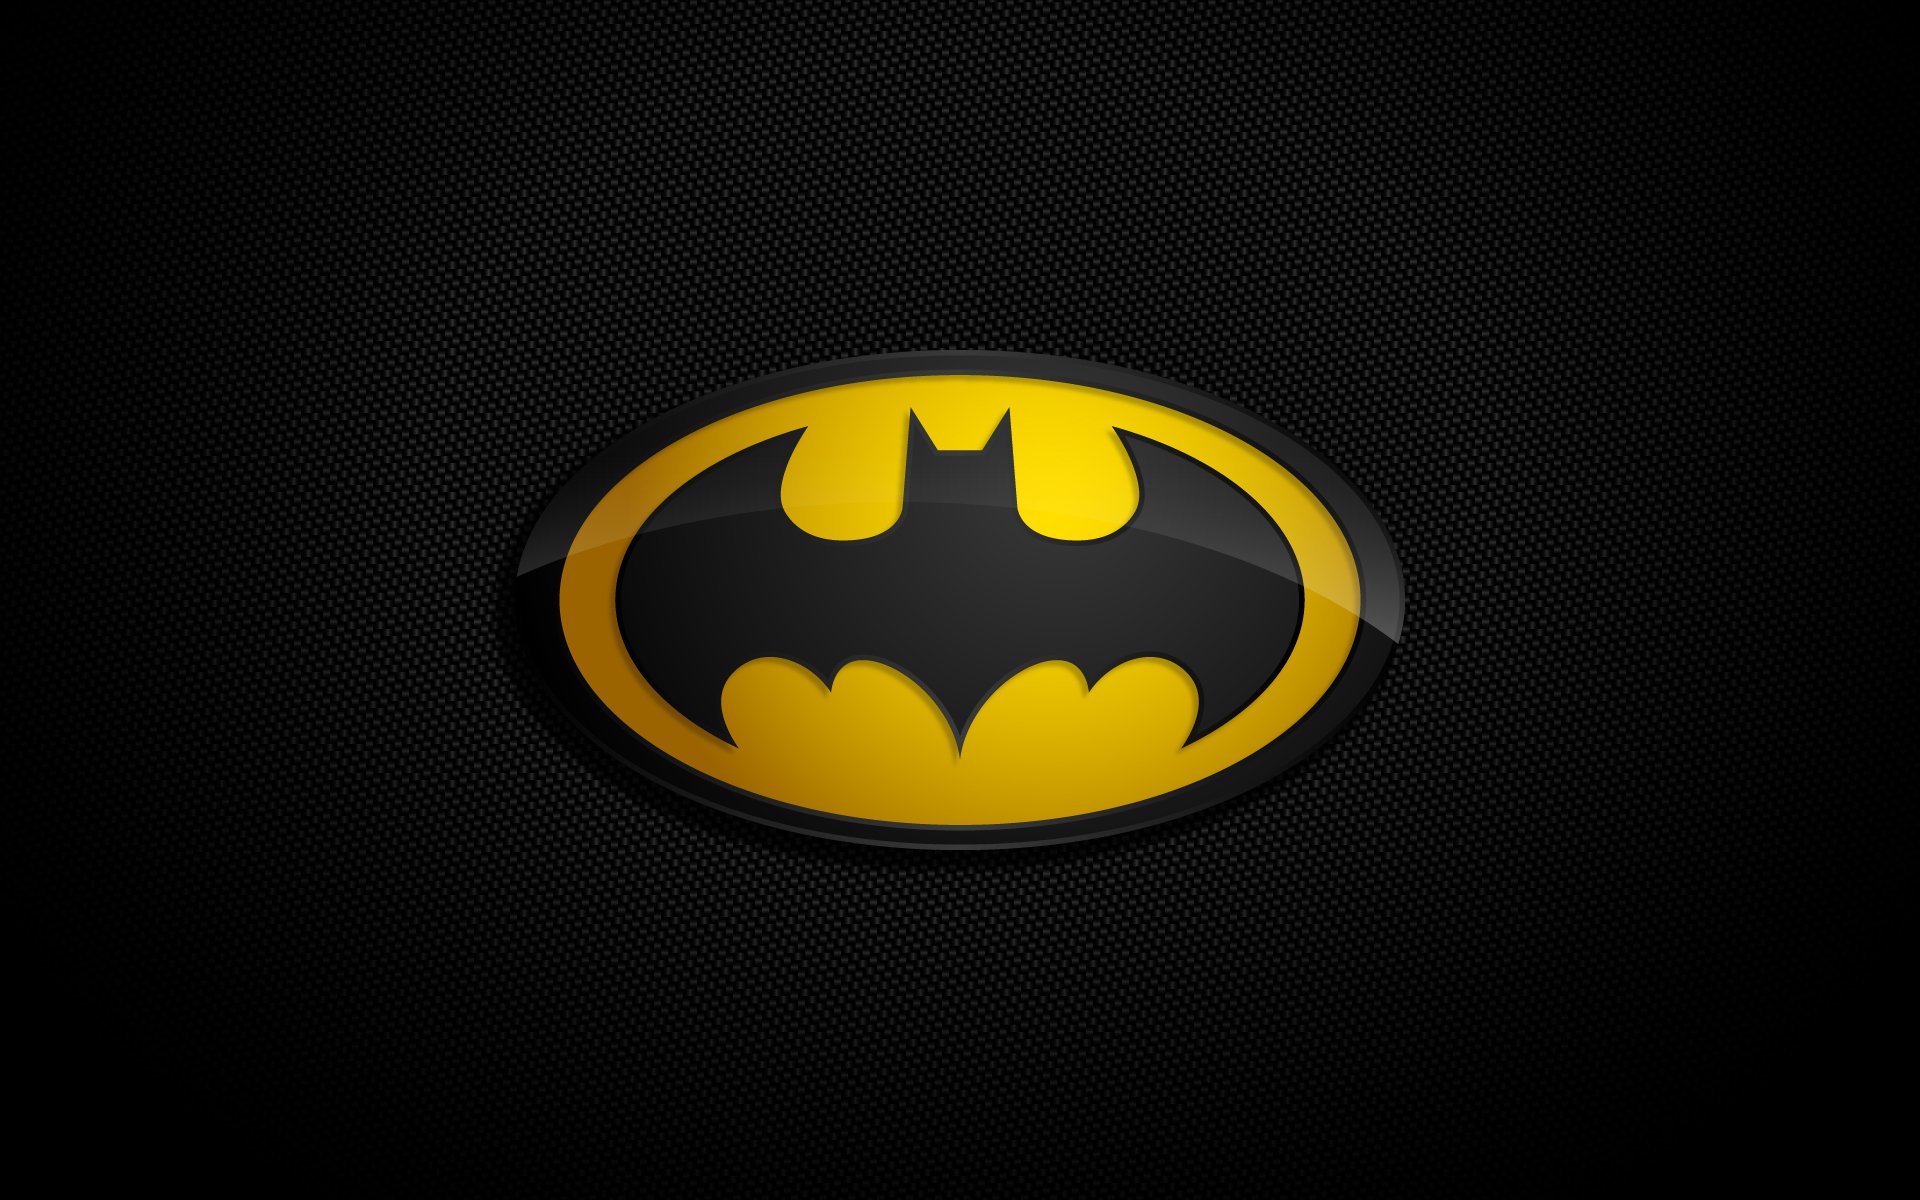 Batman Batman Symbol Fond D écran Hd Batman 248890 Hd